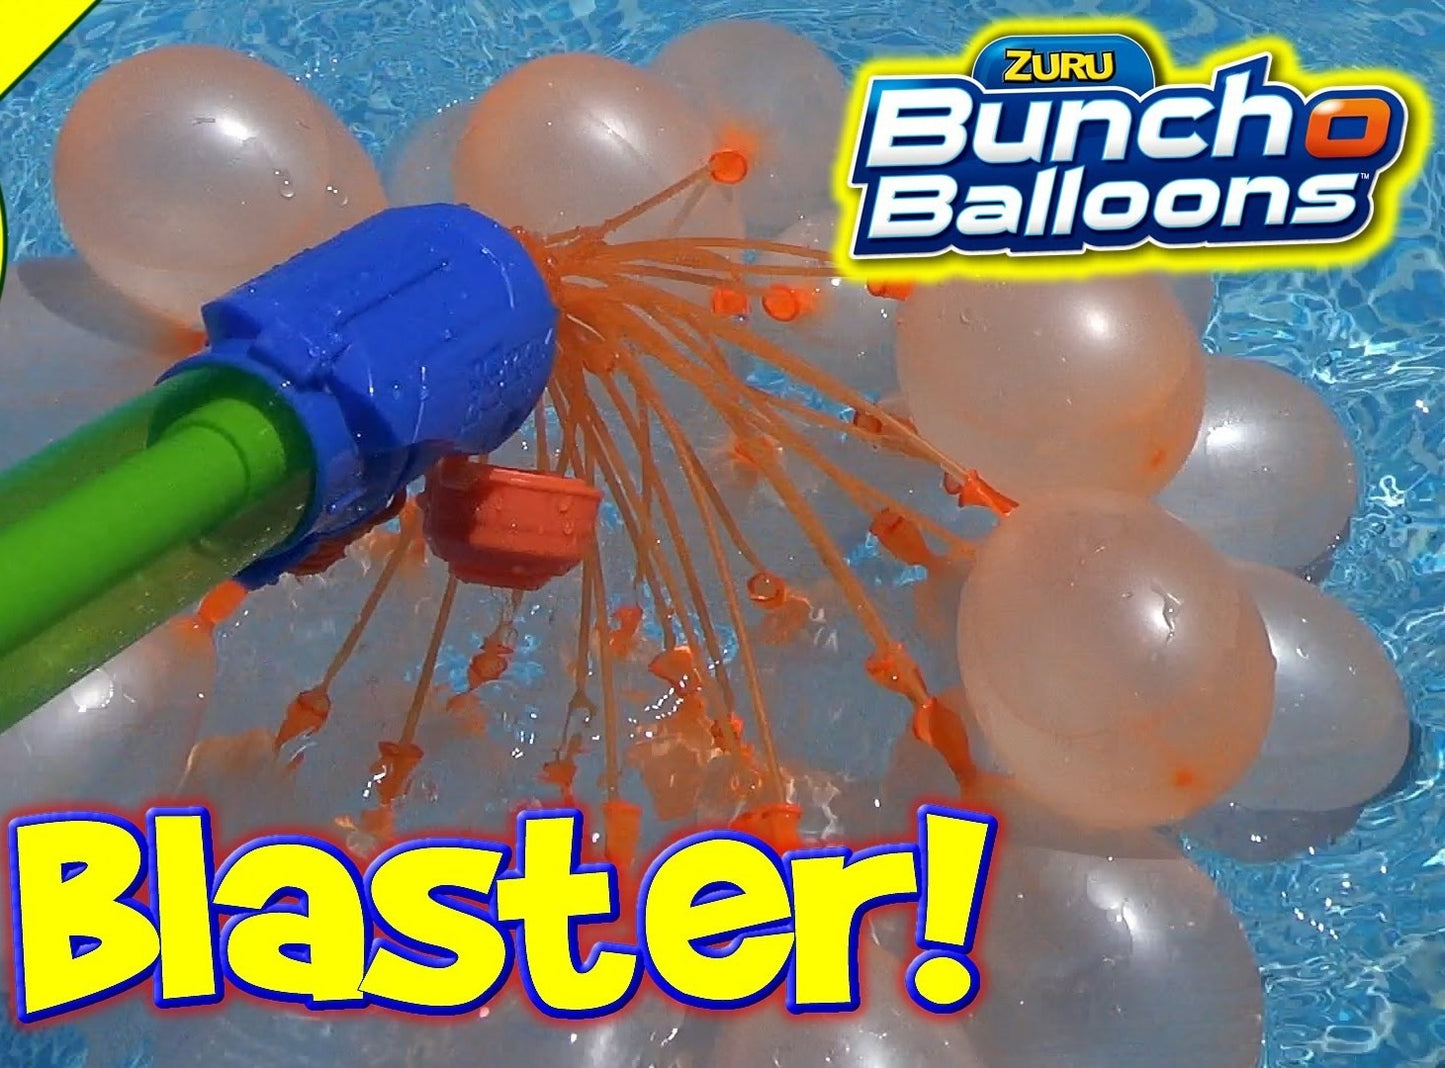 ZURU Bunch o Balloons Blaster, Wasserspielzeug Garten, Wasserbomben, Wasserball